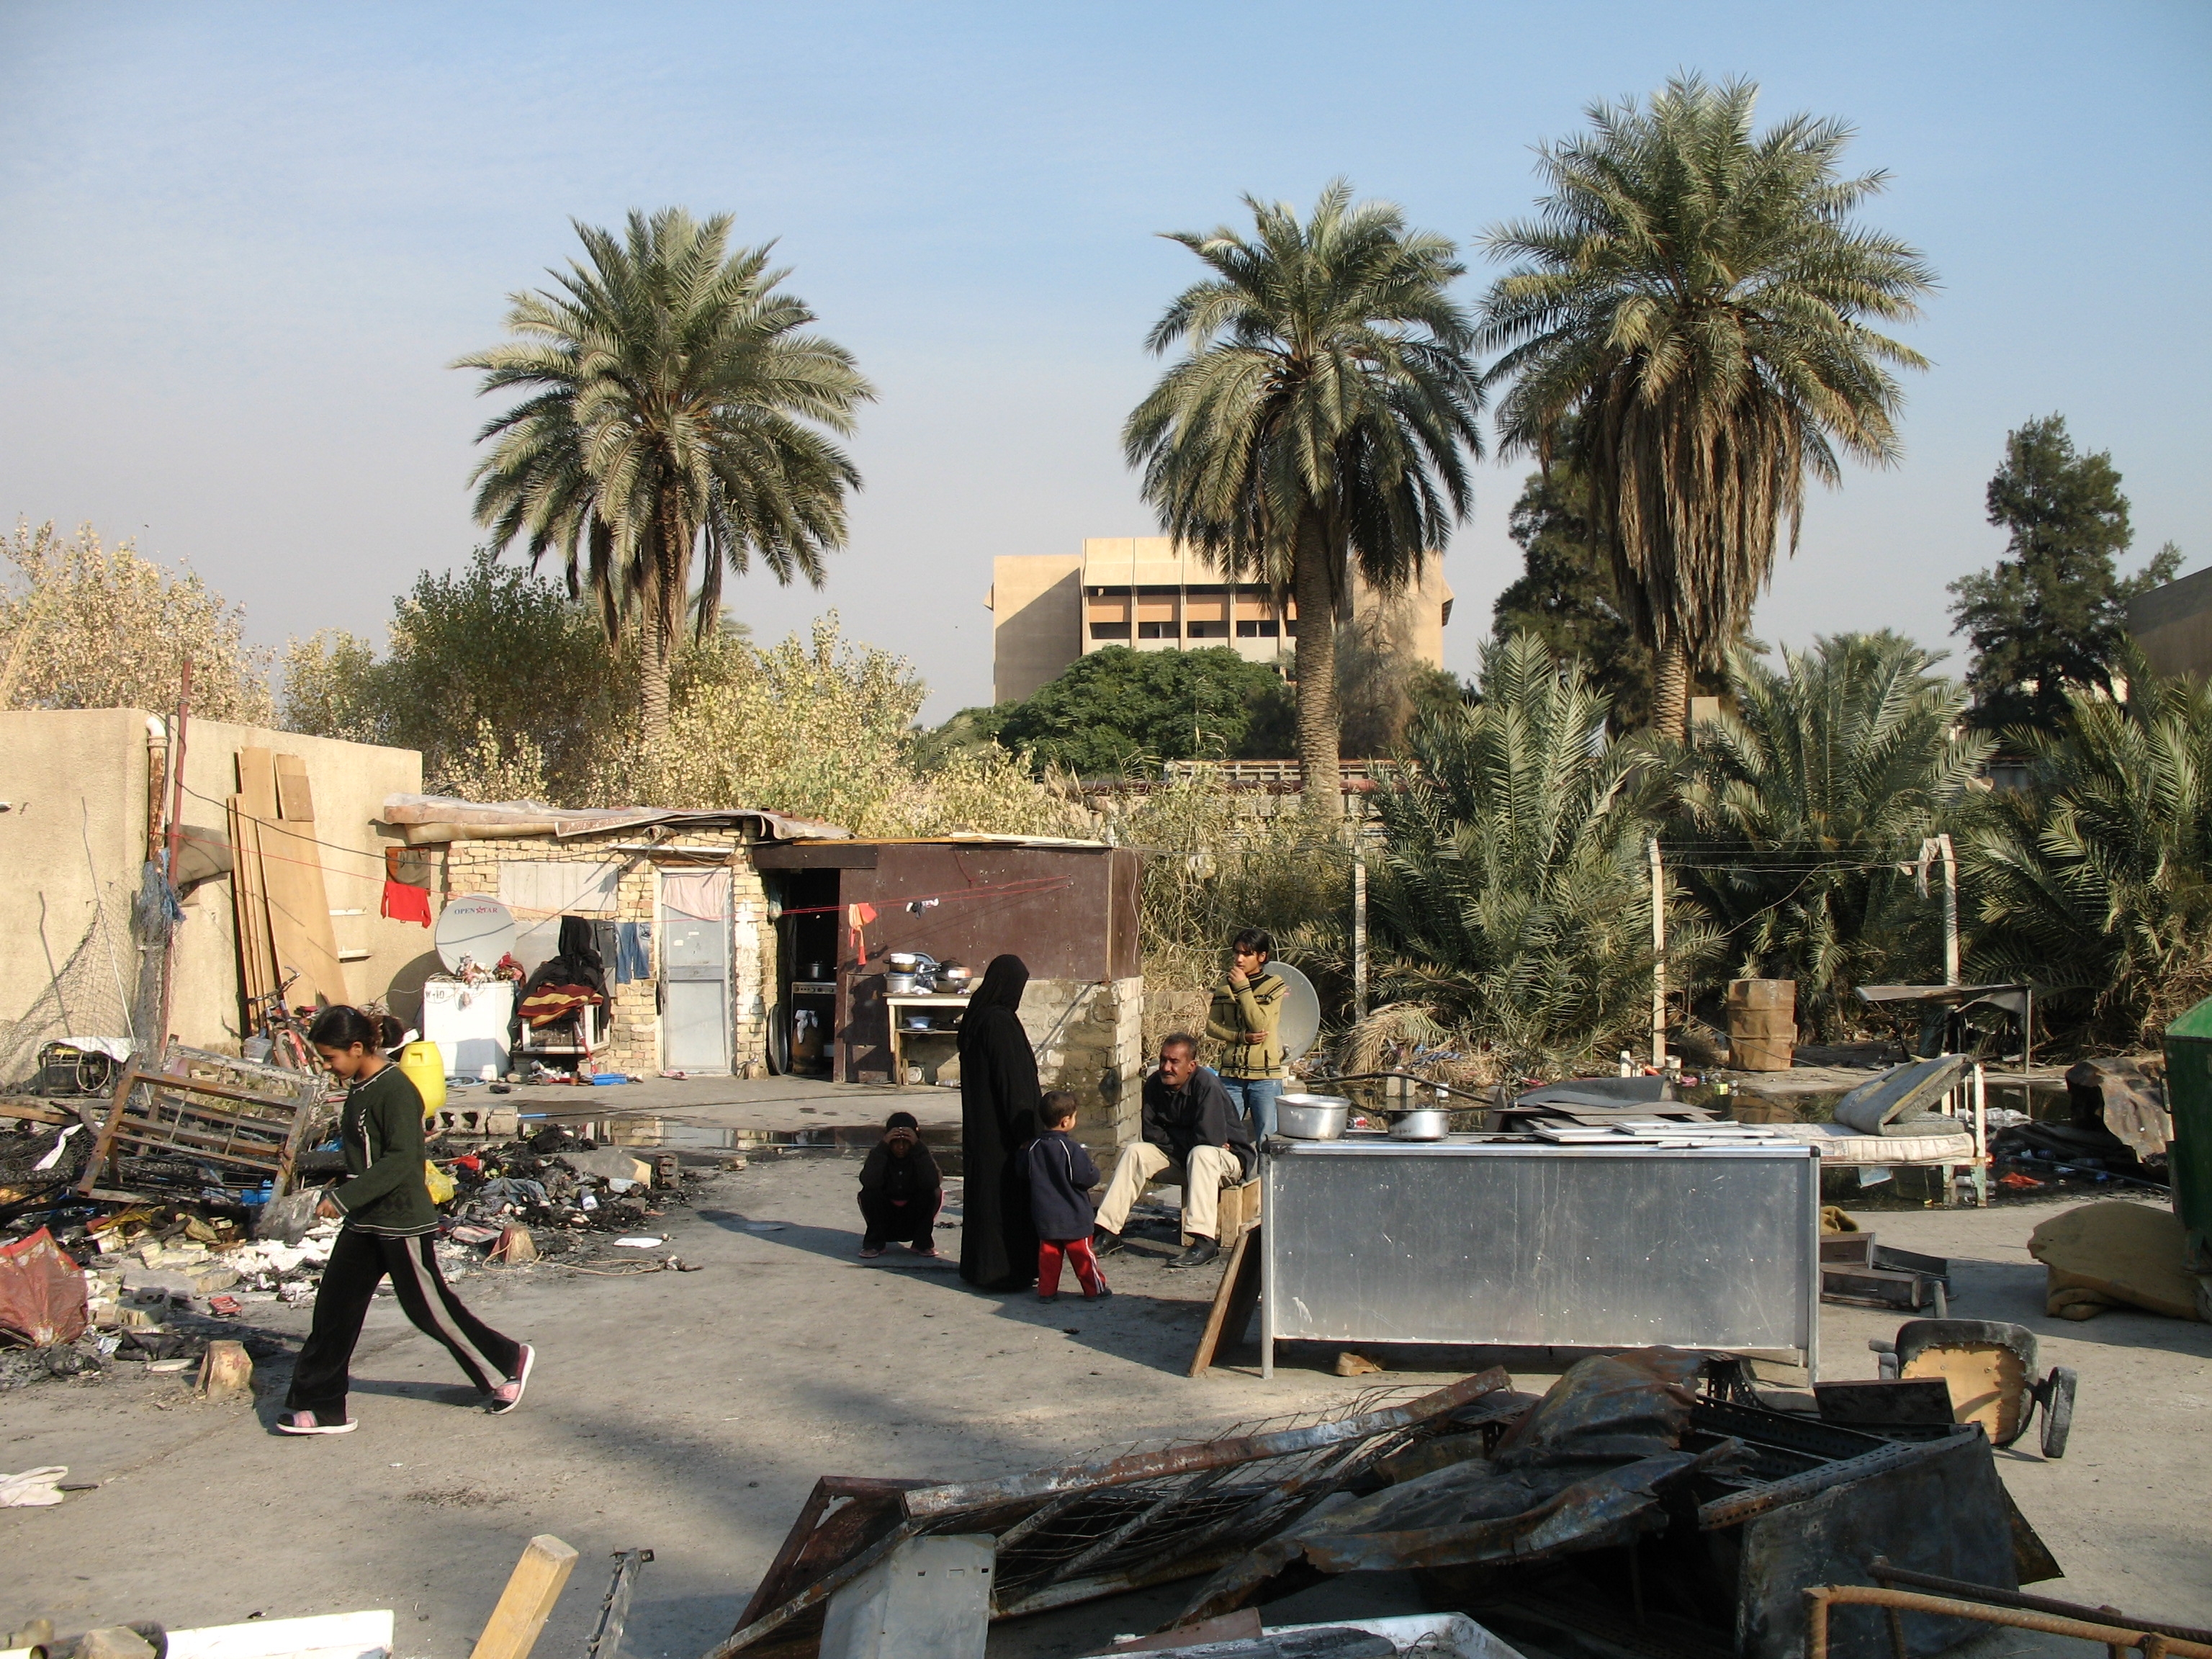 
Прибыль от нефти в Ираке растет, а жизнь простого населения только ухудшается